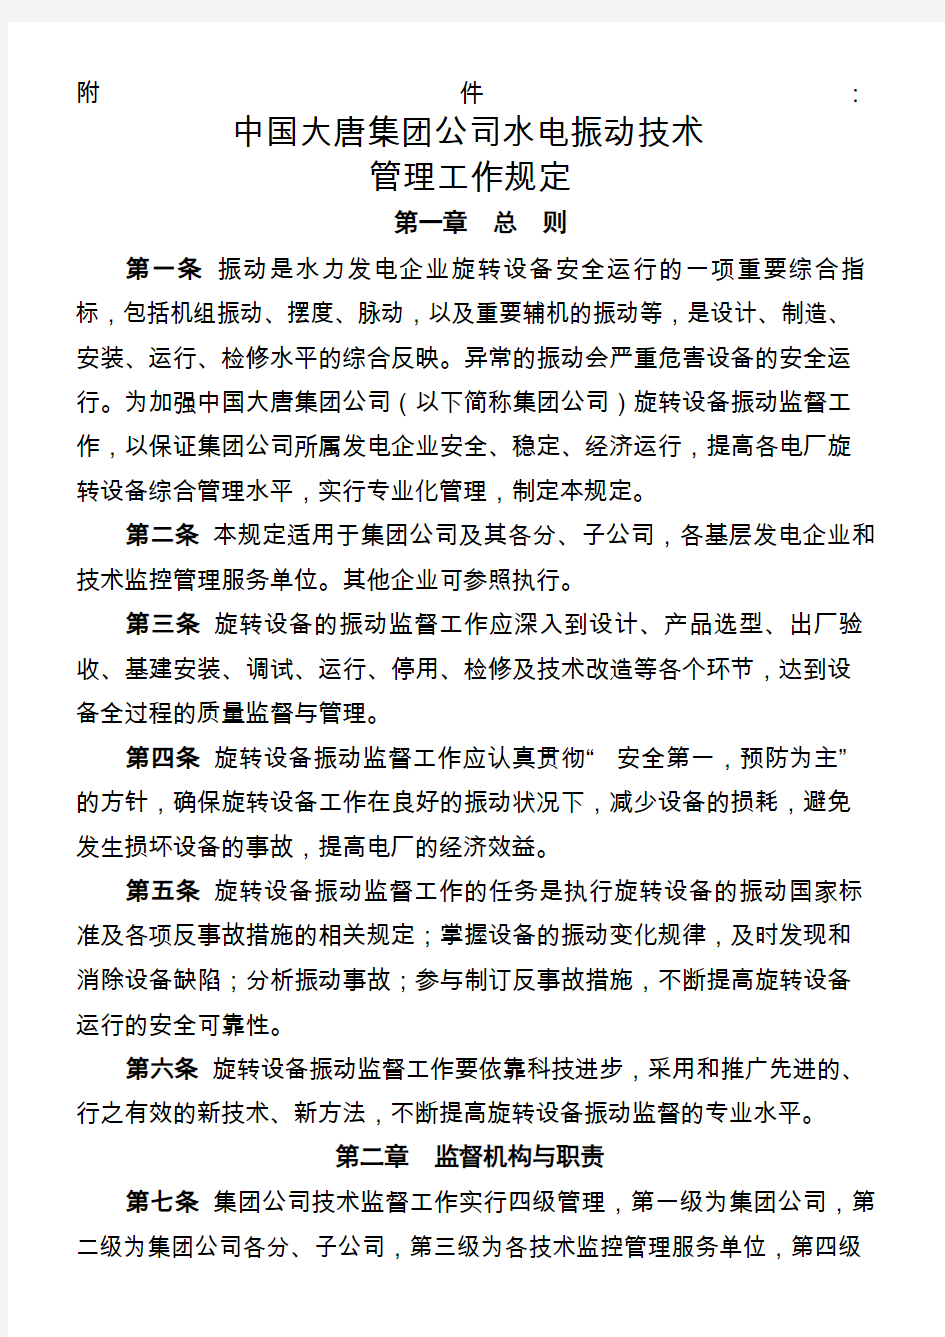 中国大唐集团公司水电振动技术管理规定(大唐集团制〔2007〕69号)